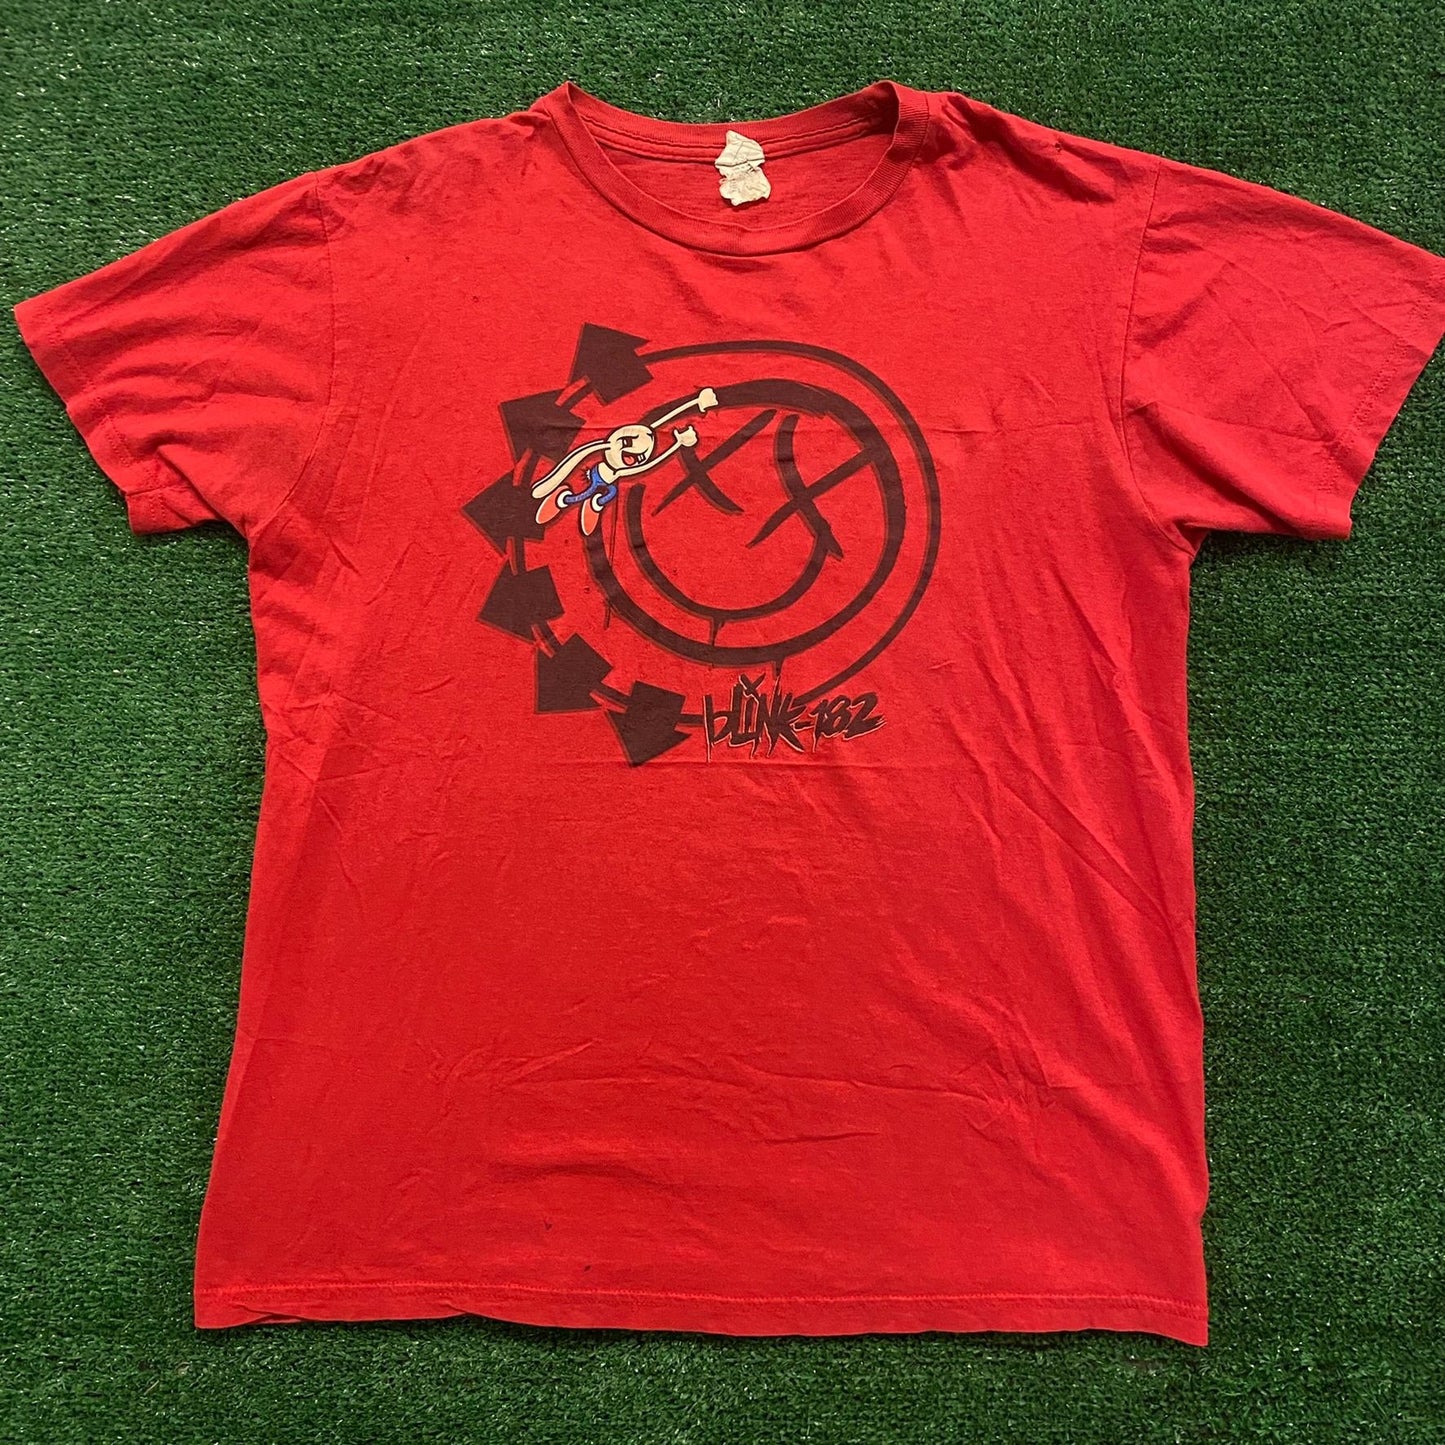 Blink 182 Vintage Punk Rock Band T-Shirt